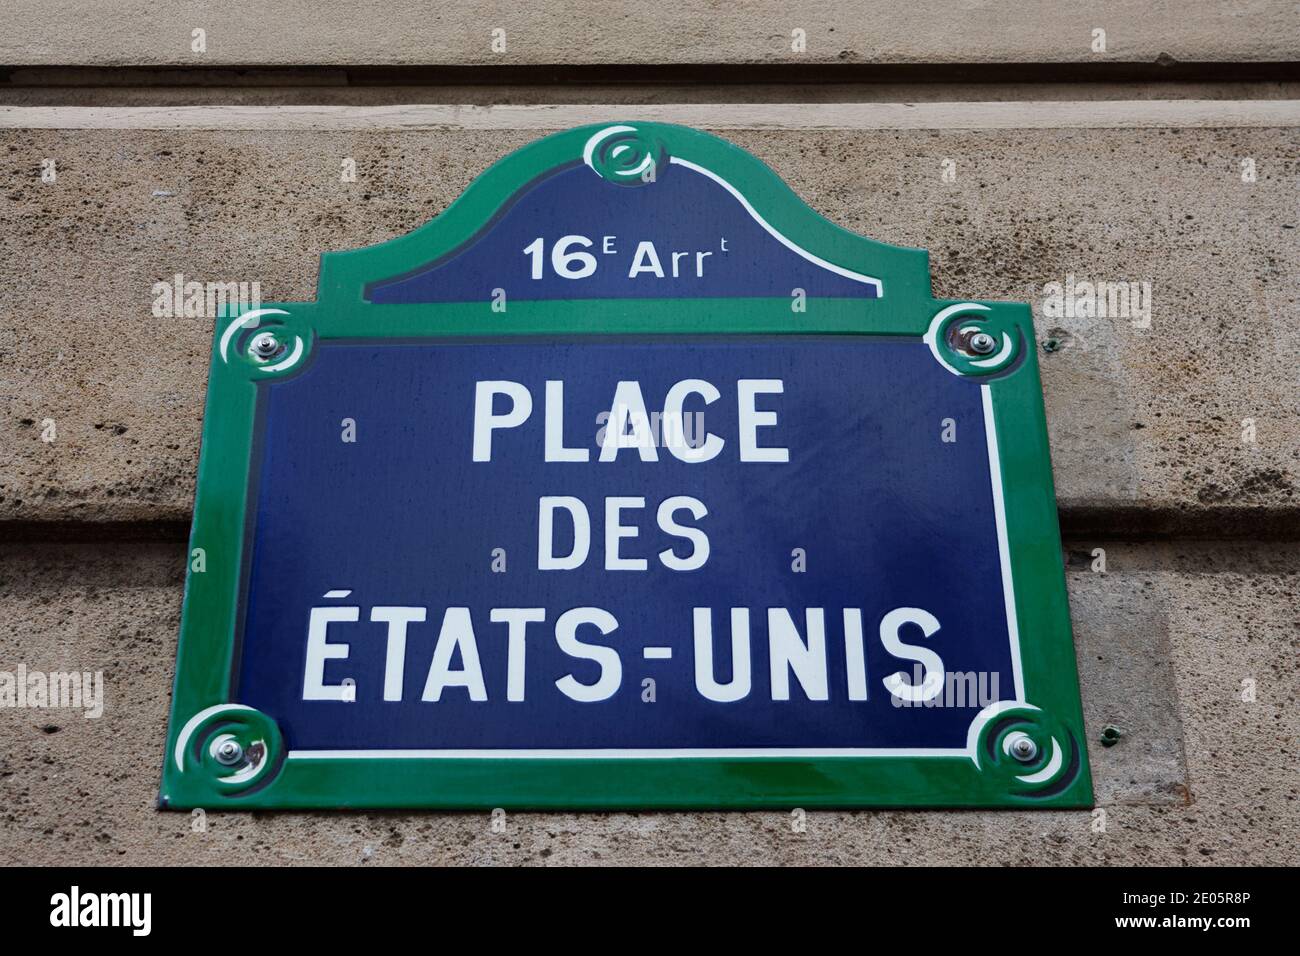 Place des Etats-Unis street sign, Paris, France Stock Photo